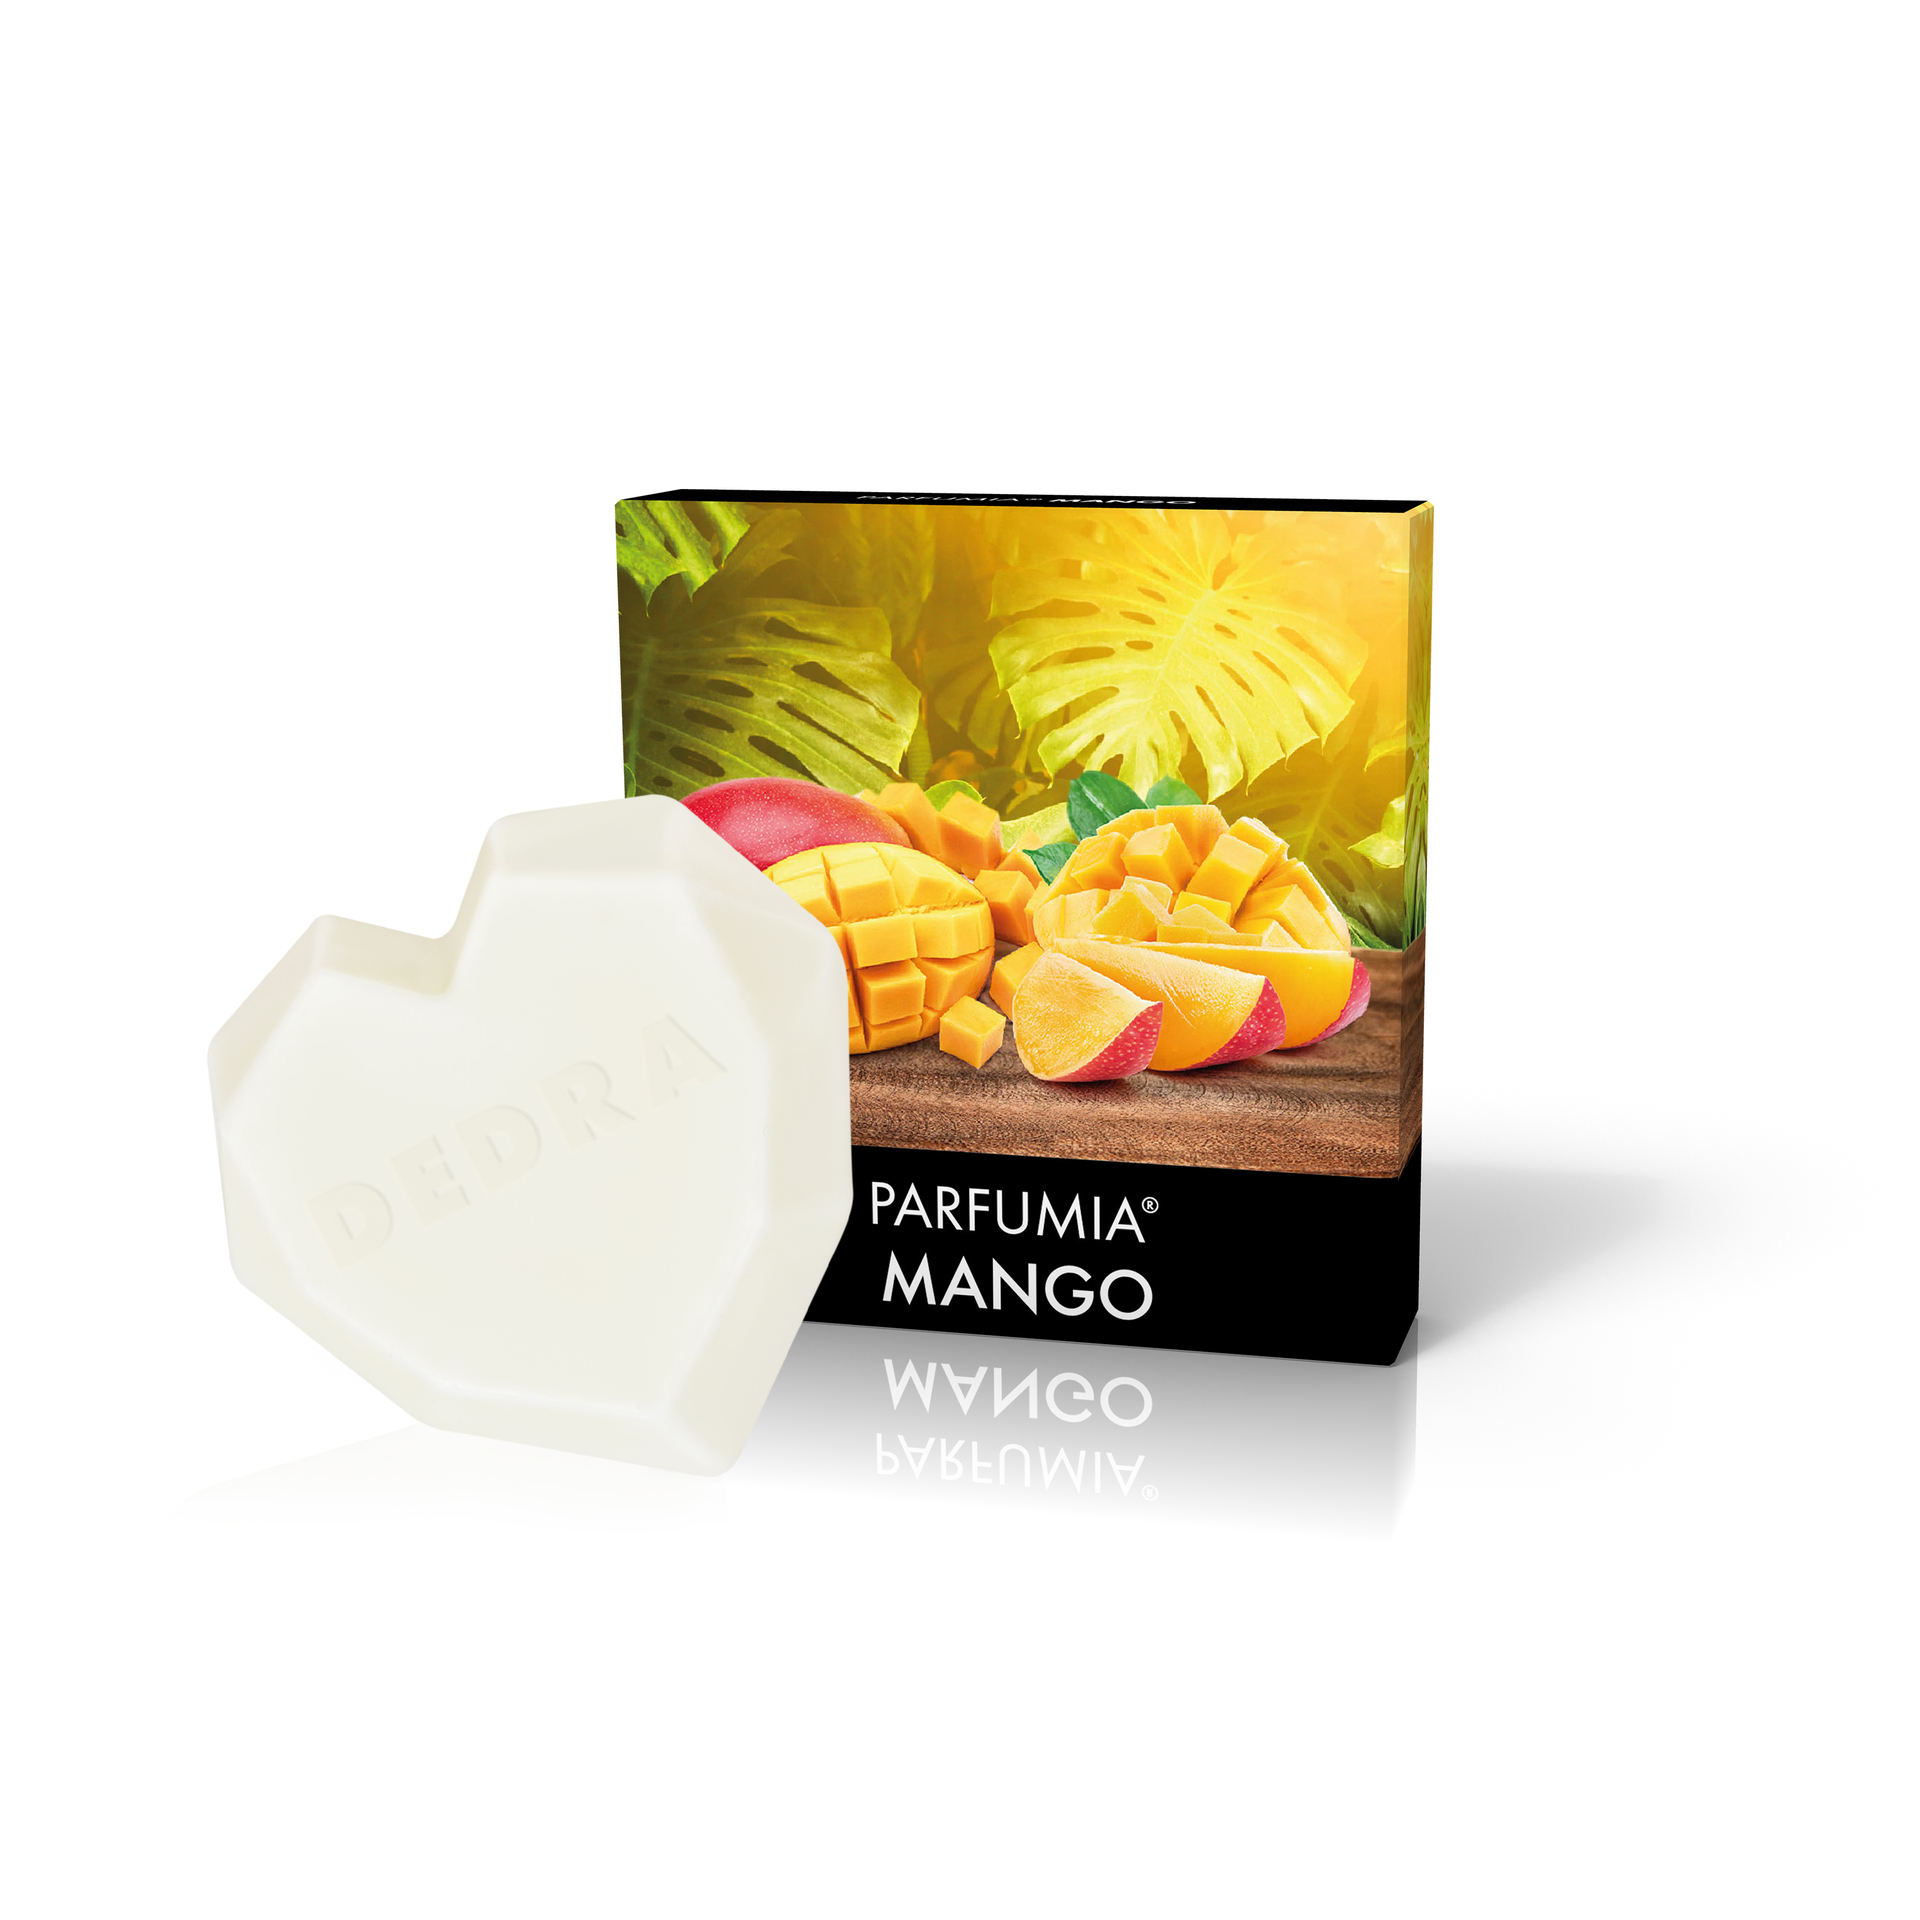 Vonný sójový EKO vosk PARFUMIA® MANGO